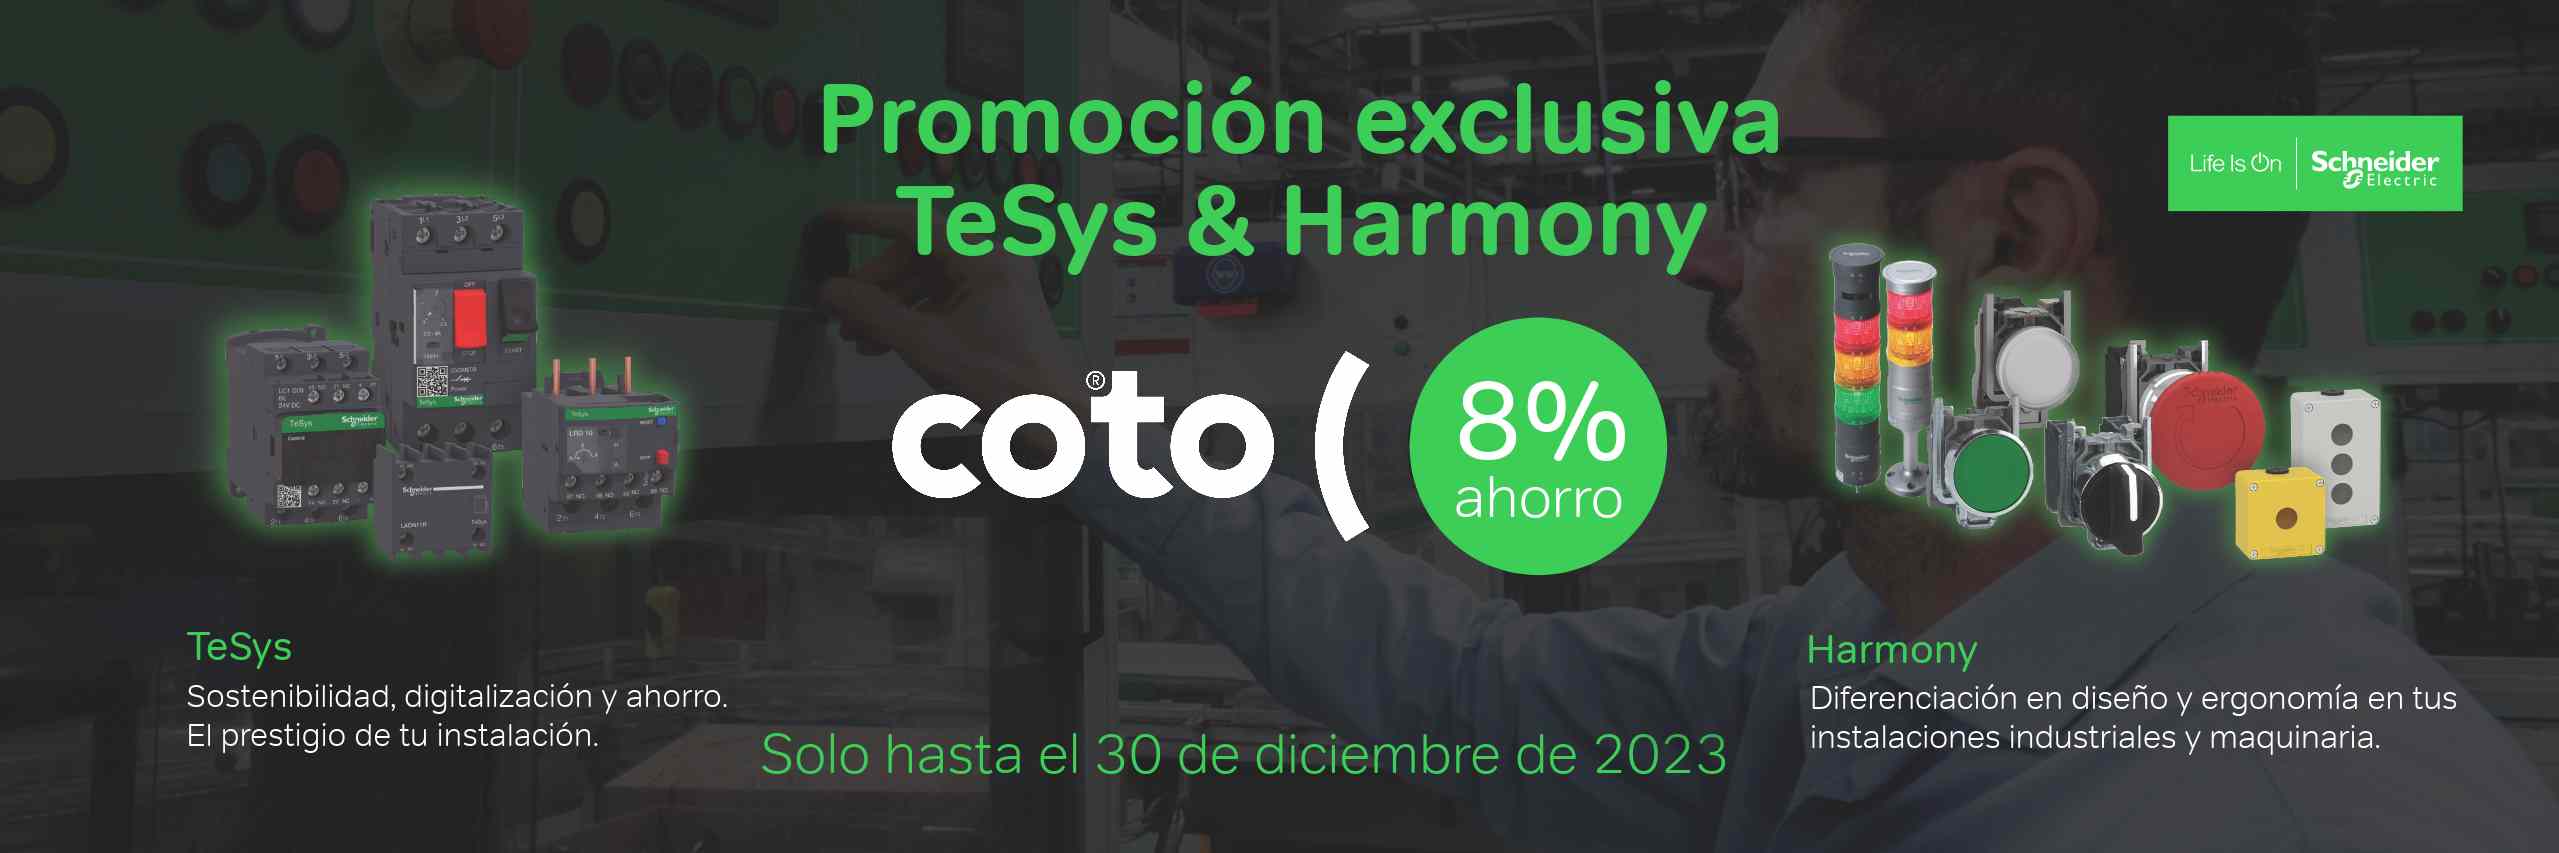 Promoción exclusiva TeSys & Harmony